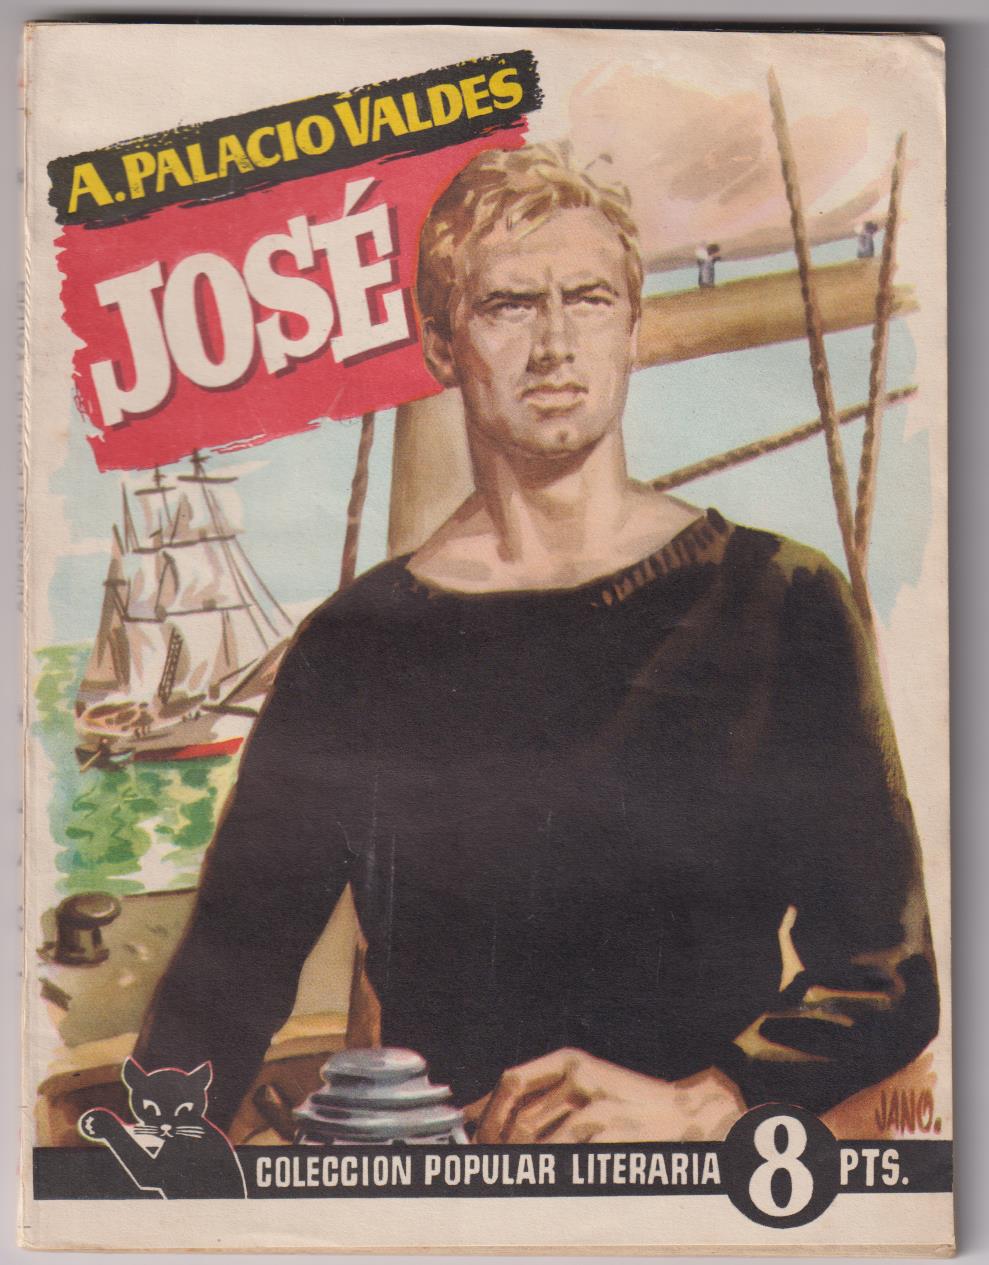 Popular Literaria nº 52. José por A. palacio Valdés. Año 1957